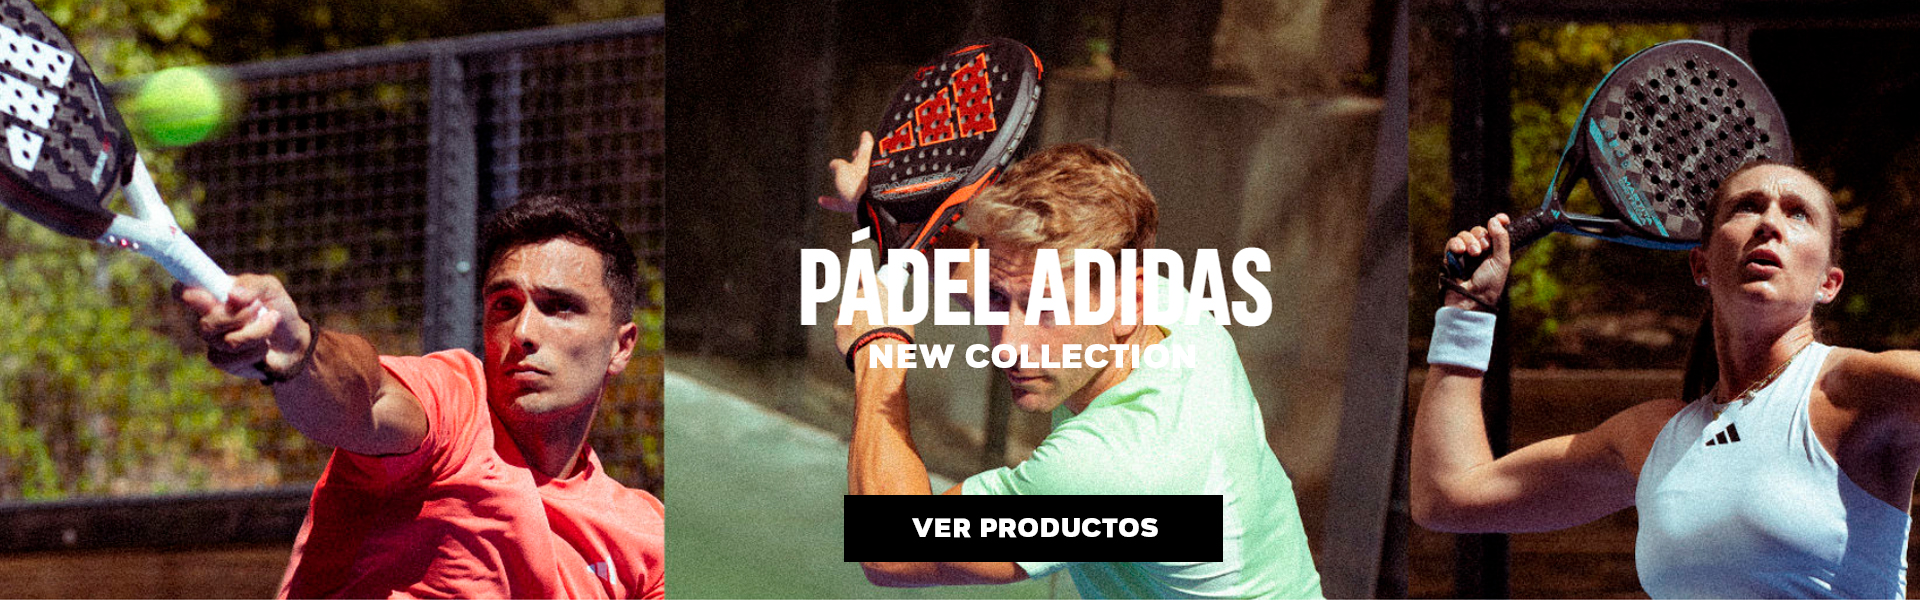 Adidas-Padel